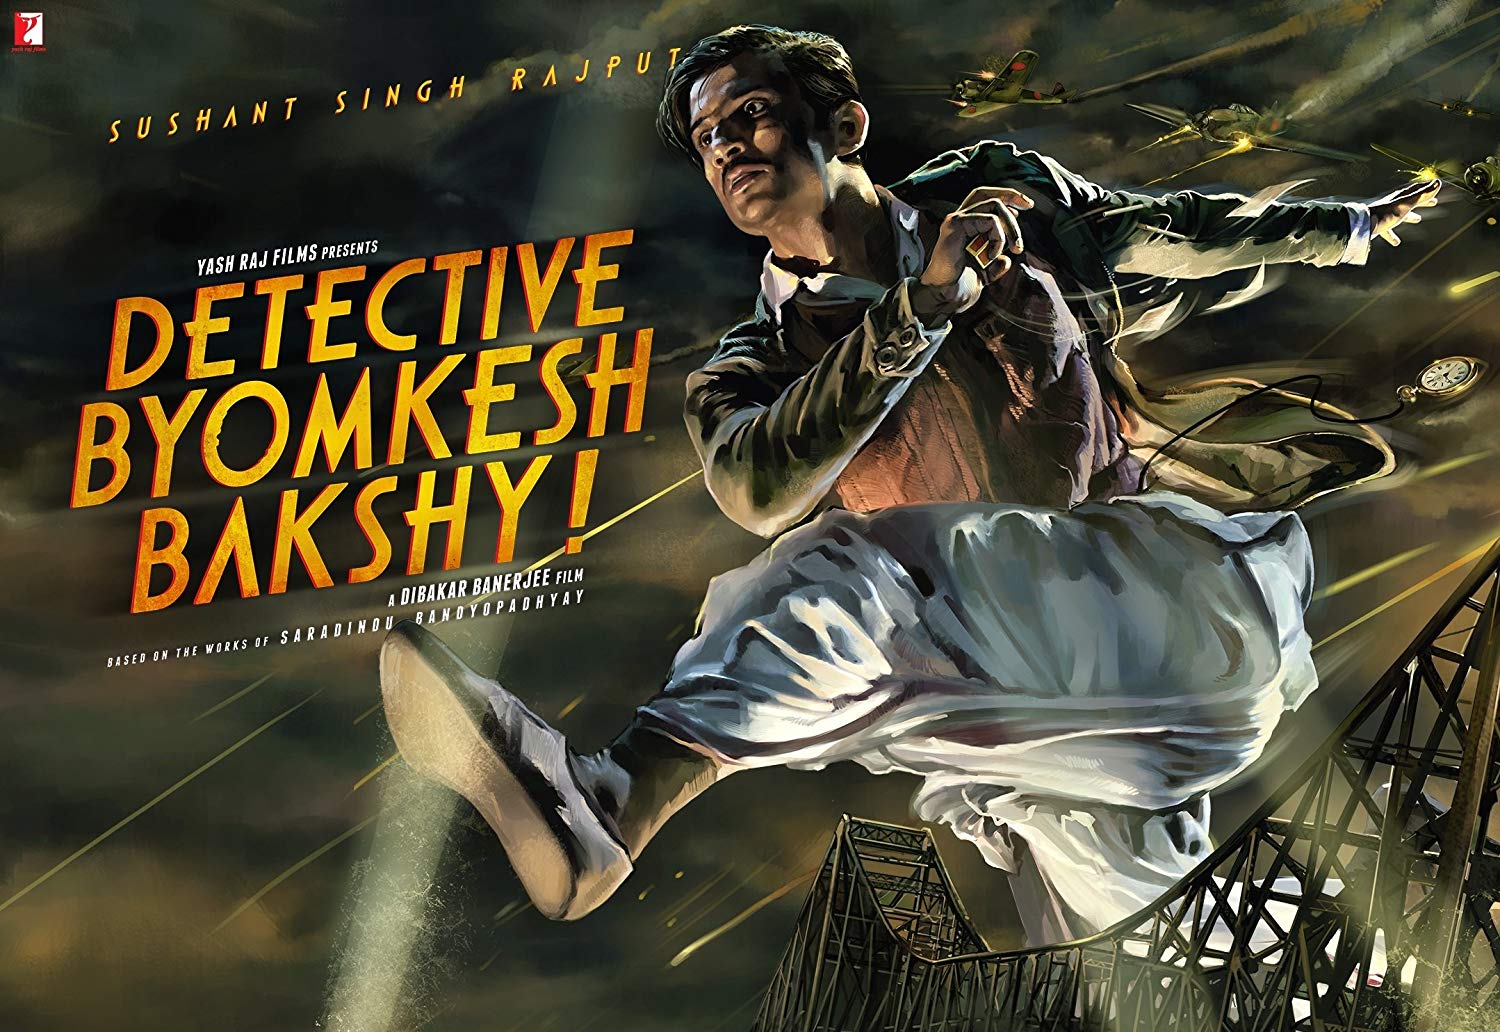 Detective byomkesh bakshy cast